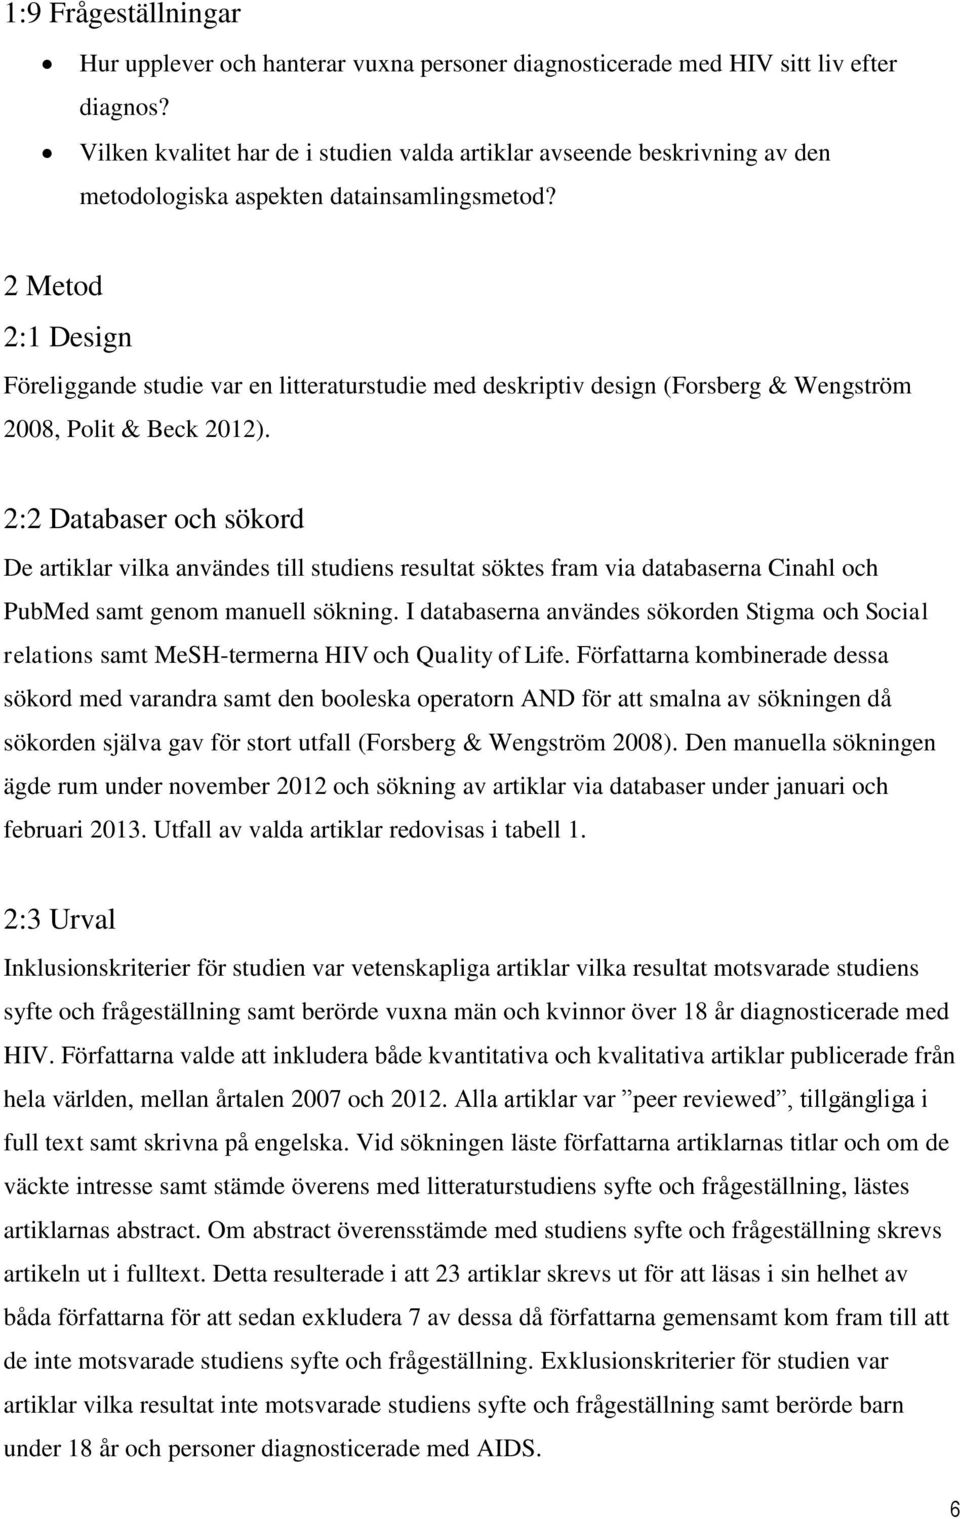 2 Metod 2:1 Design Föreliggande studie var en litteraturstudie med deskriptiv design (Forsberg & Wengström 2008, Polit & Beck 2012).